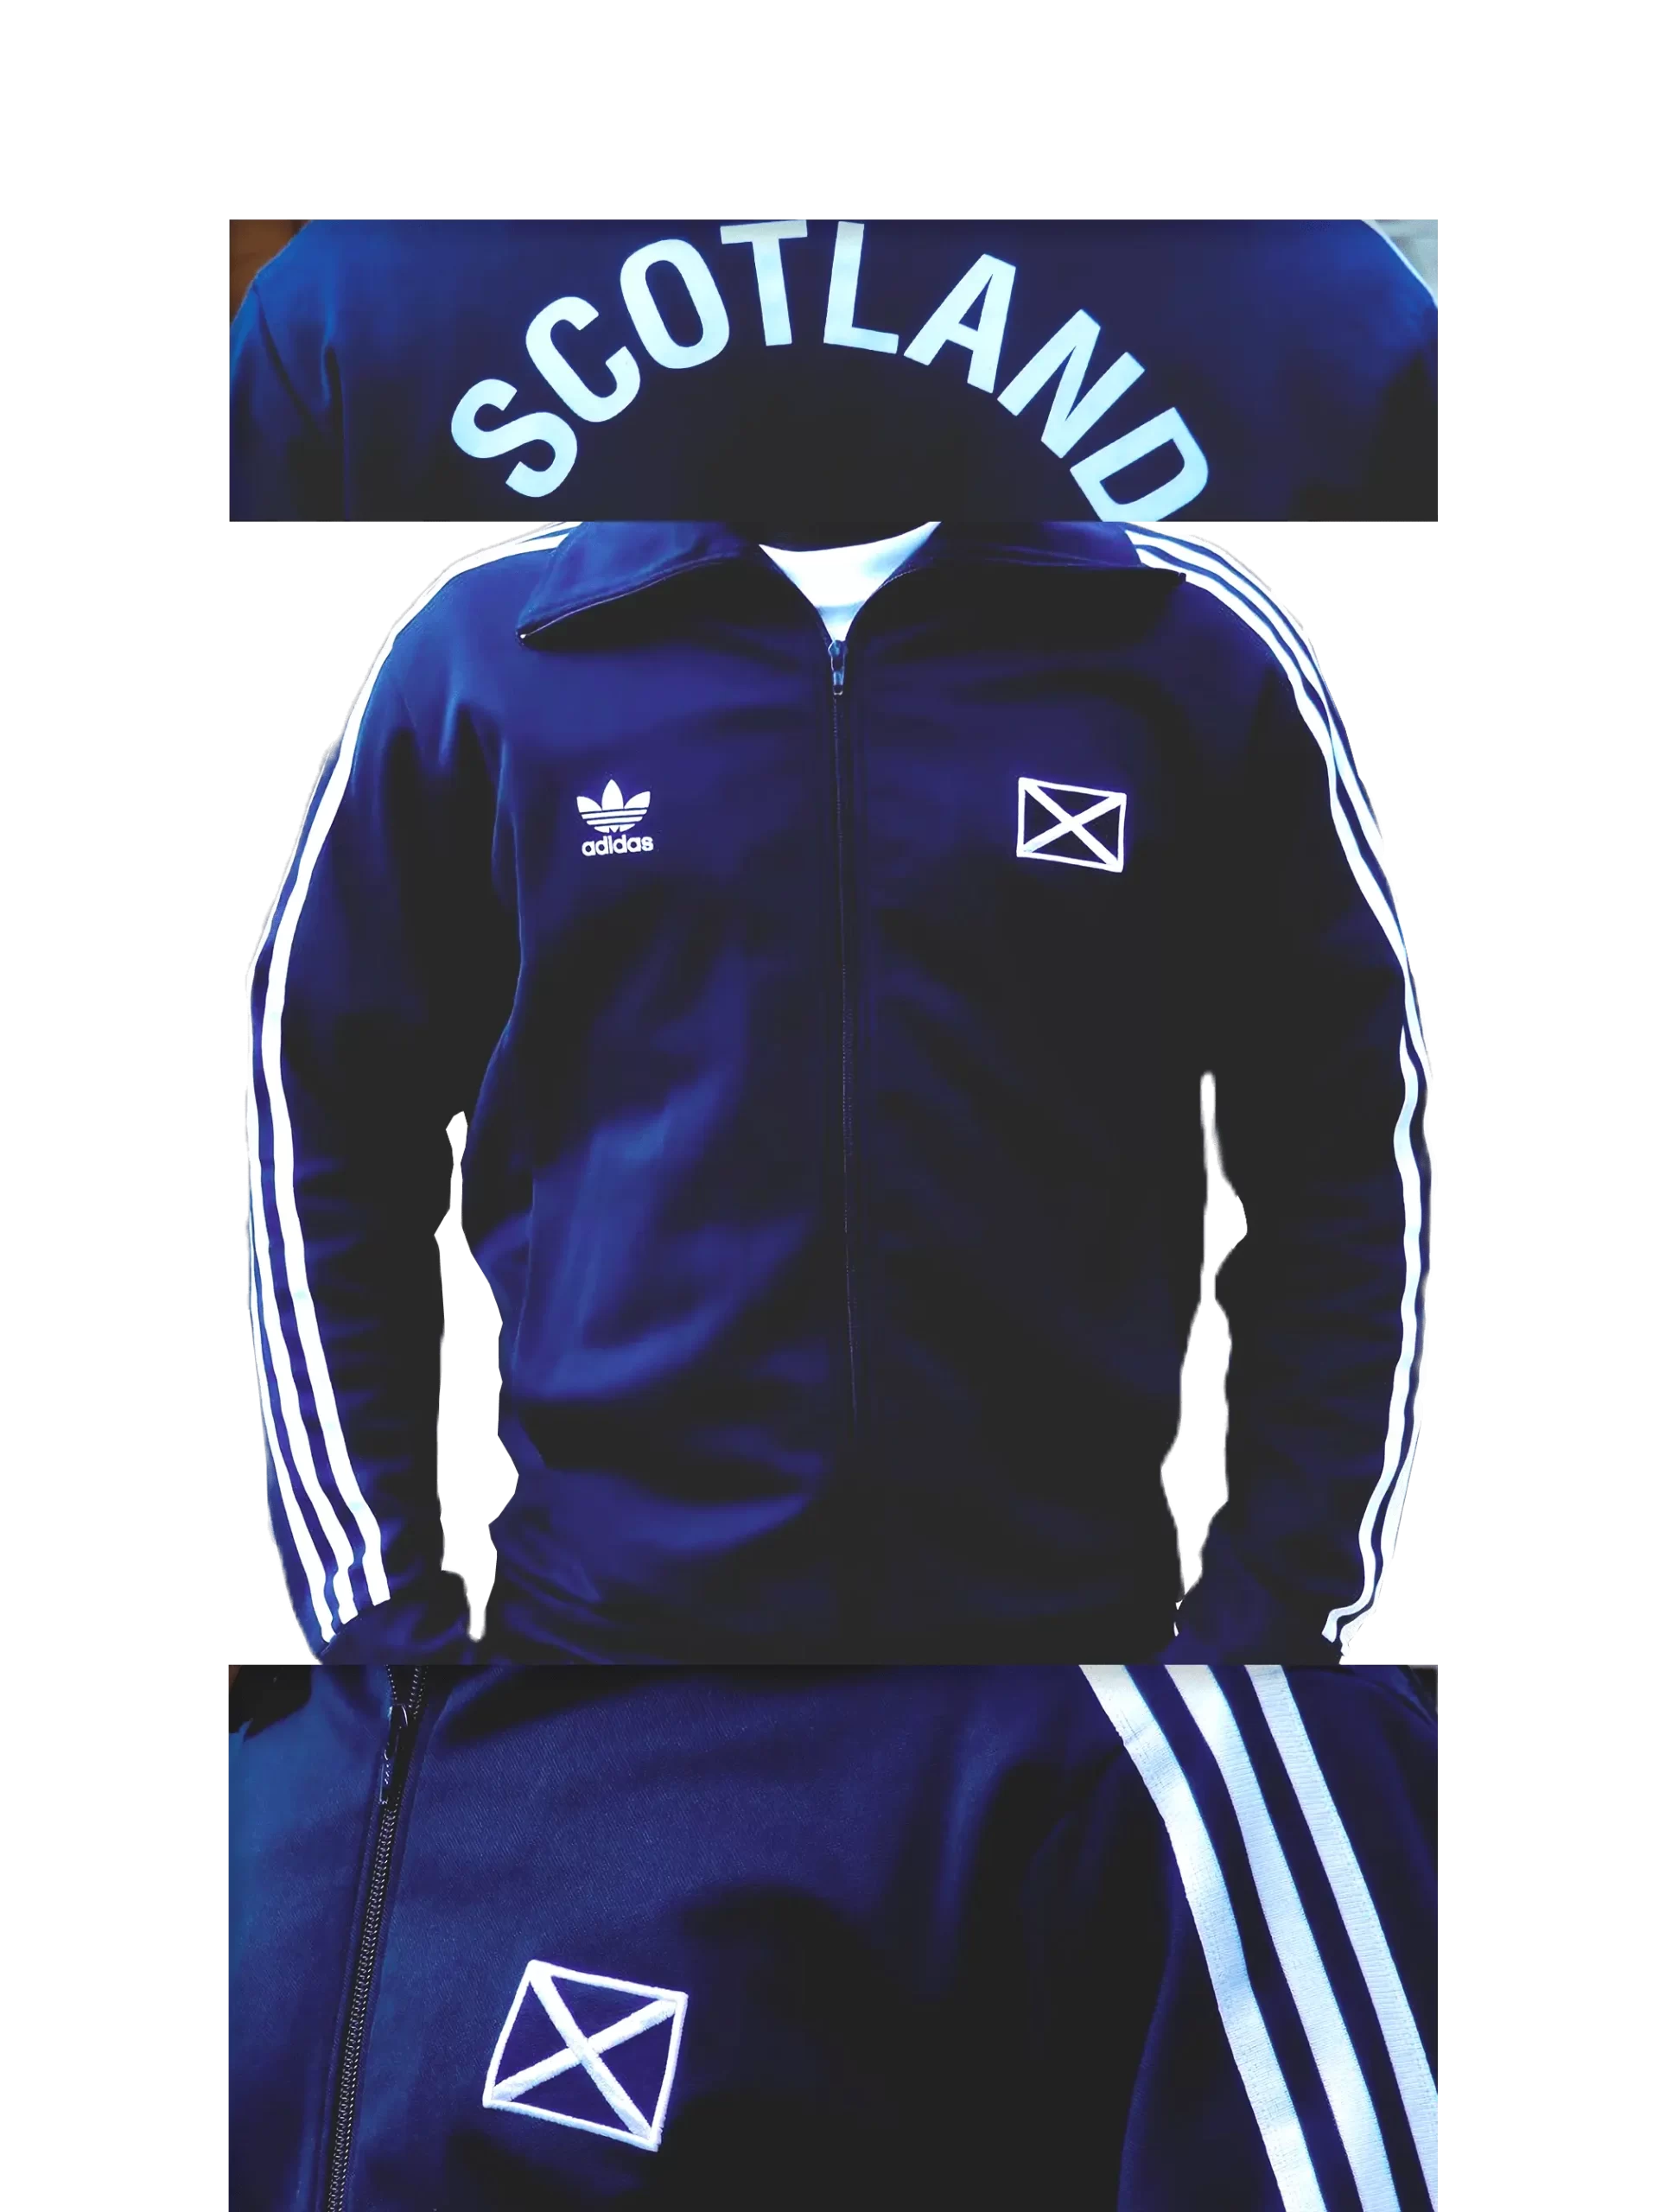 Men's 2004 Scotland Track Top by Adidas Originals: Quiet (EnLawded.com file #lmchk69809ip2y123835kg9st)